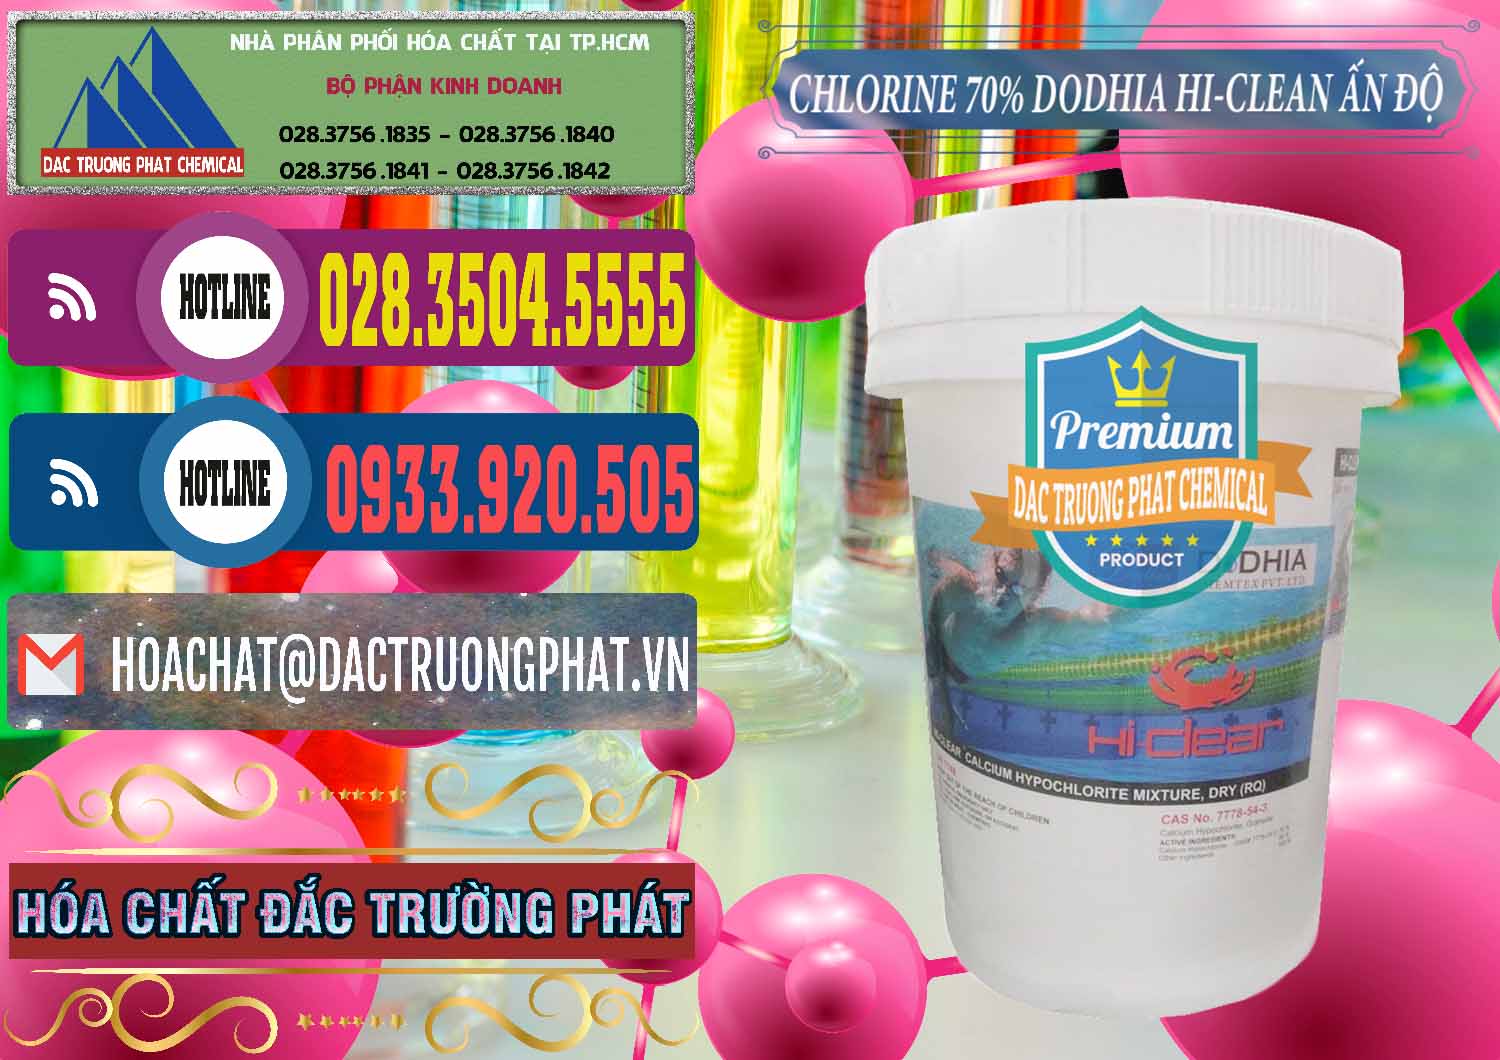 Cty chuyên nhập khẩu và bán Chlorine – Clorin 70% Dodhia Hi-Clean Ấn Độ India - 0214 - Nhà cung cấp - phân phối hóa chất tại TP.HCM - muabanhoachat.com.vn